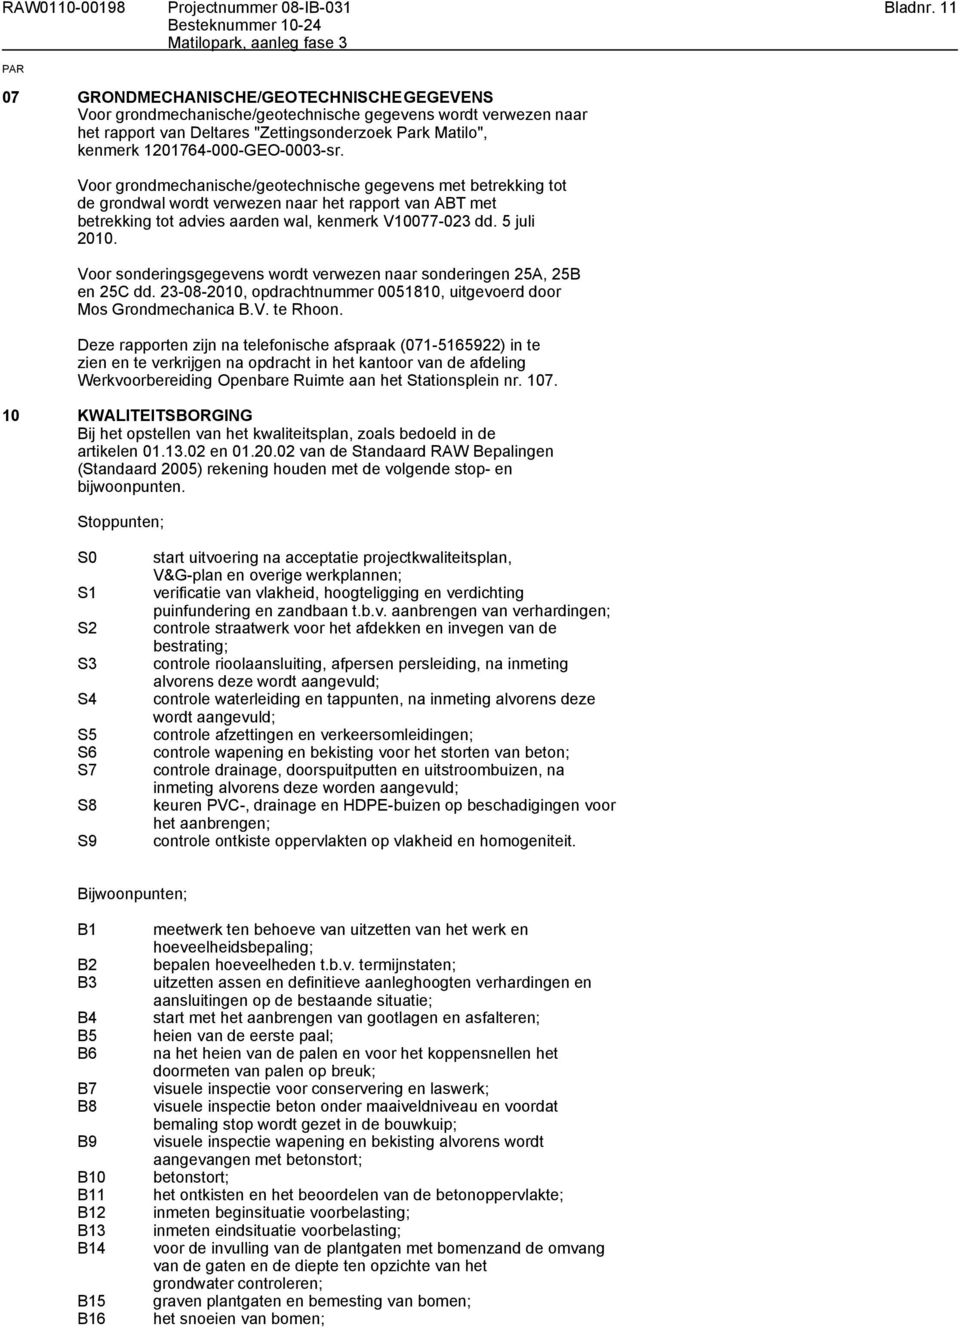 Voor grondmechanische/geotechnische gegevens met betrekking tot de grondwal wordt verwezen naar het rapport van ABT met betrekking tot advies aarden wal, kenmerk V10077-023 dd. 5 juli 2010.